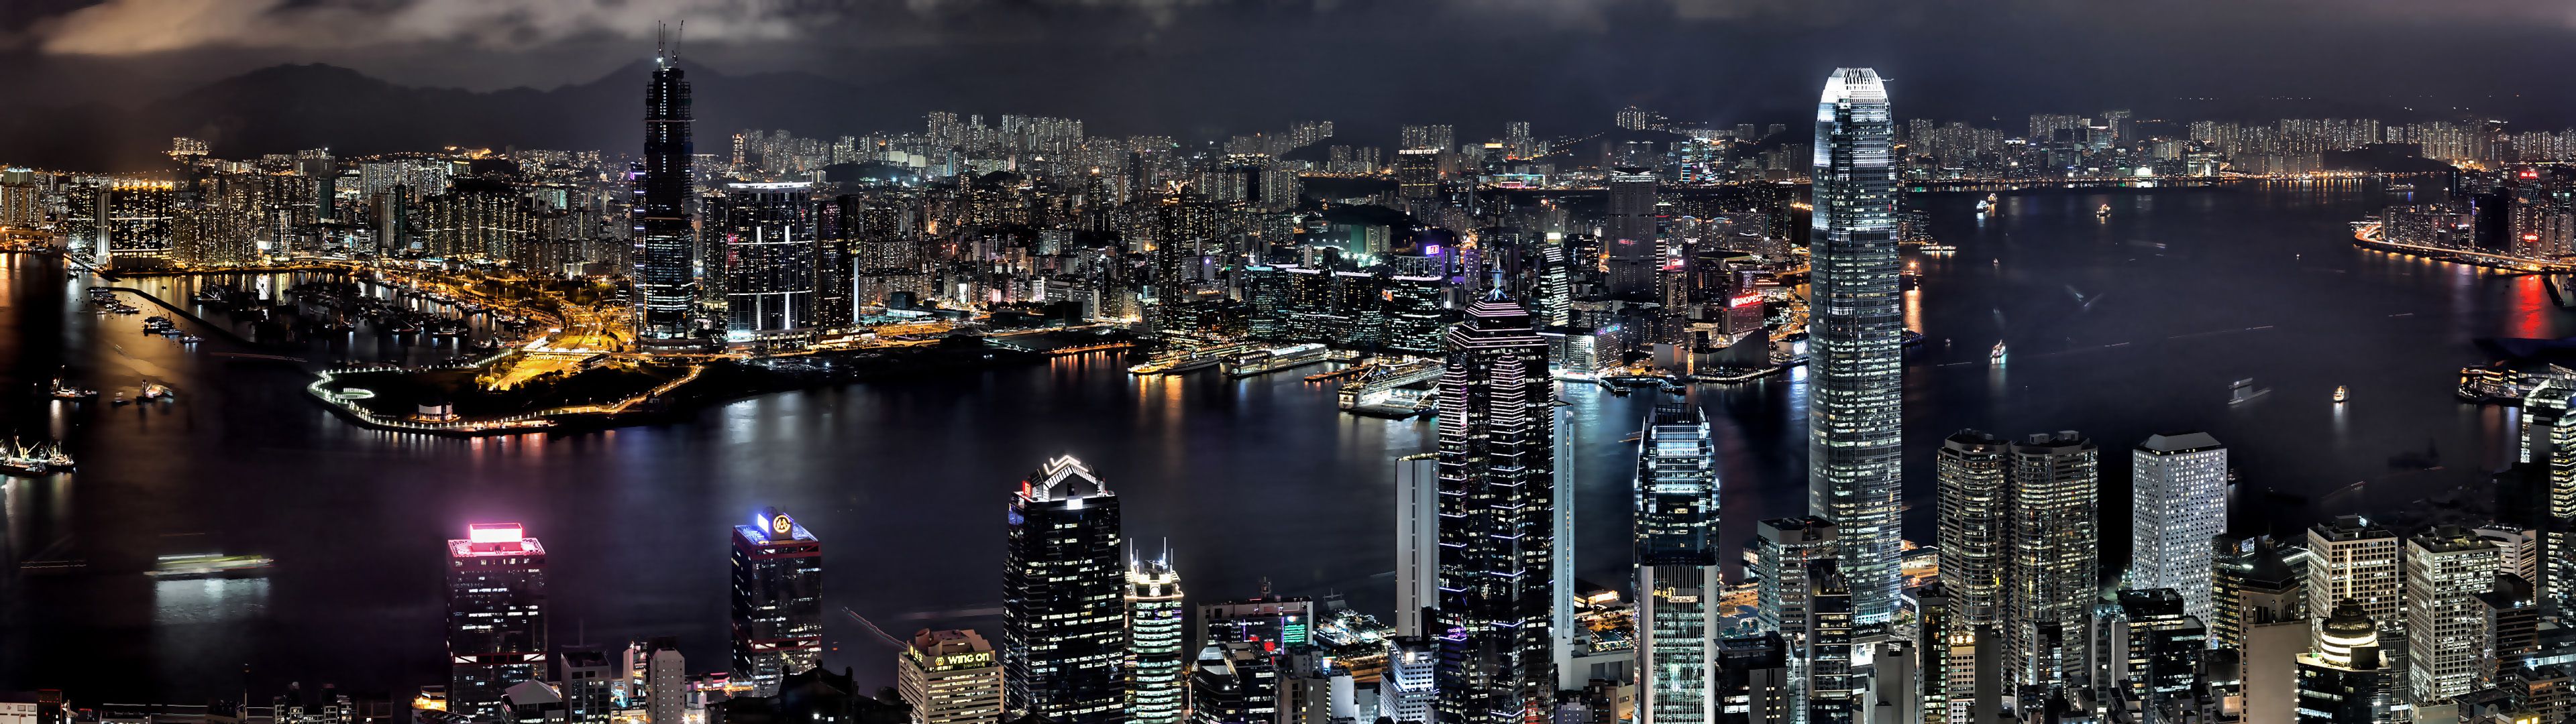 Cityscapes night buildings Hong Kong wallpaper 3840x1080 61374